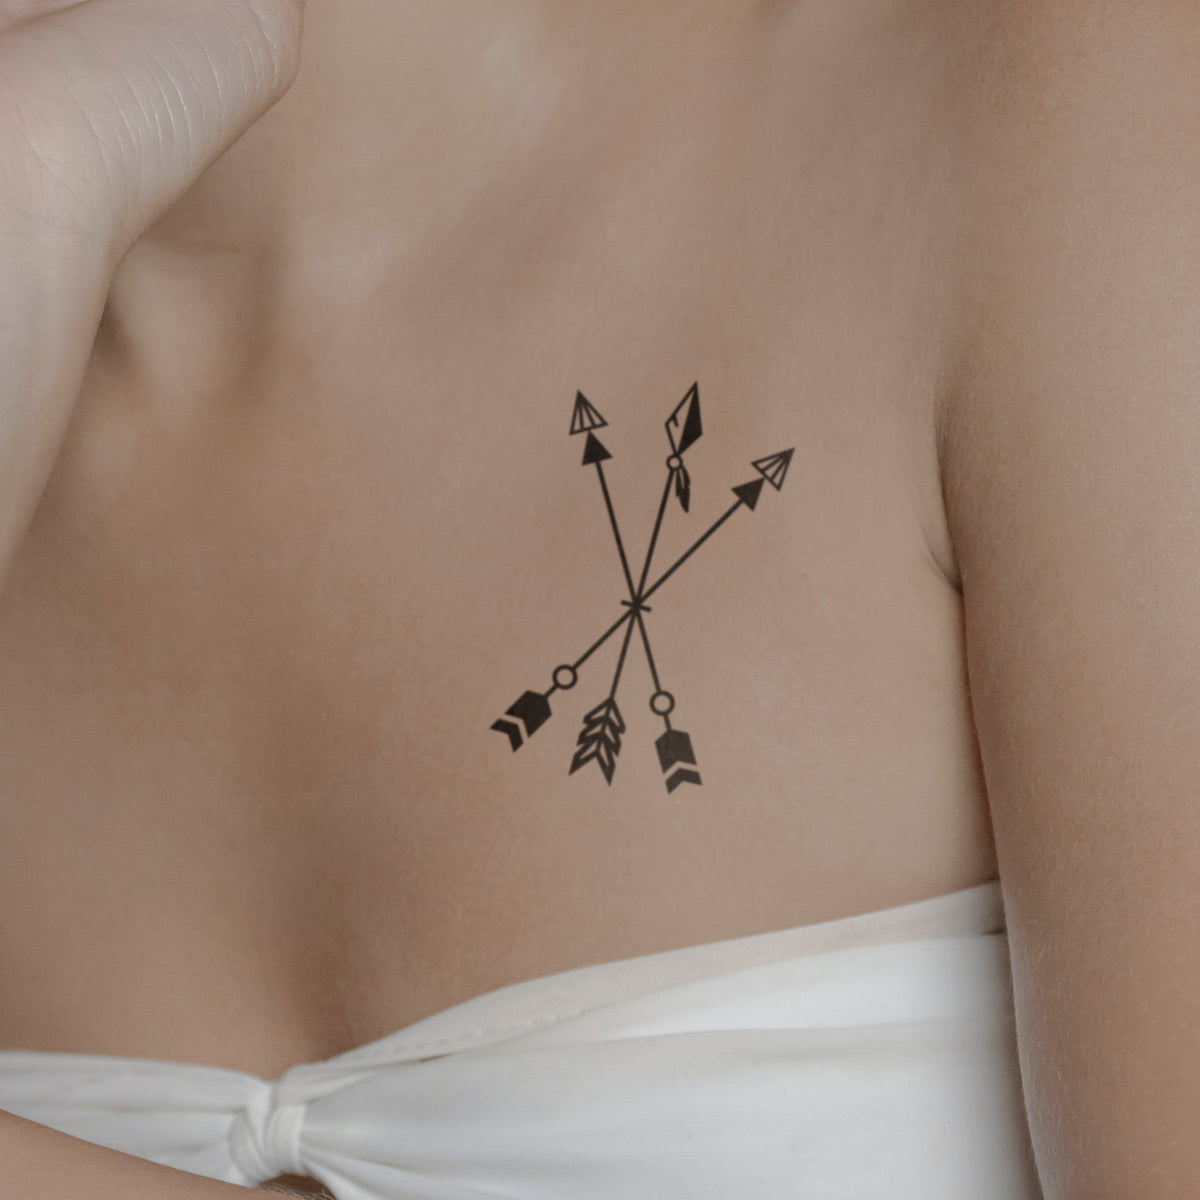 Small Arrows Tattoo on Arm - Best Tattoo Ideas Gallery